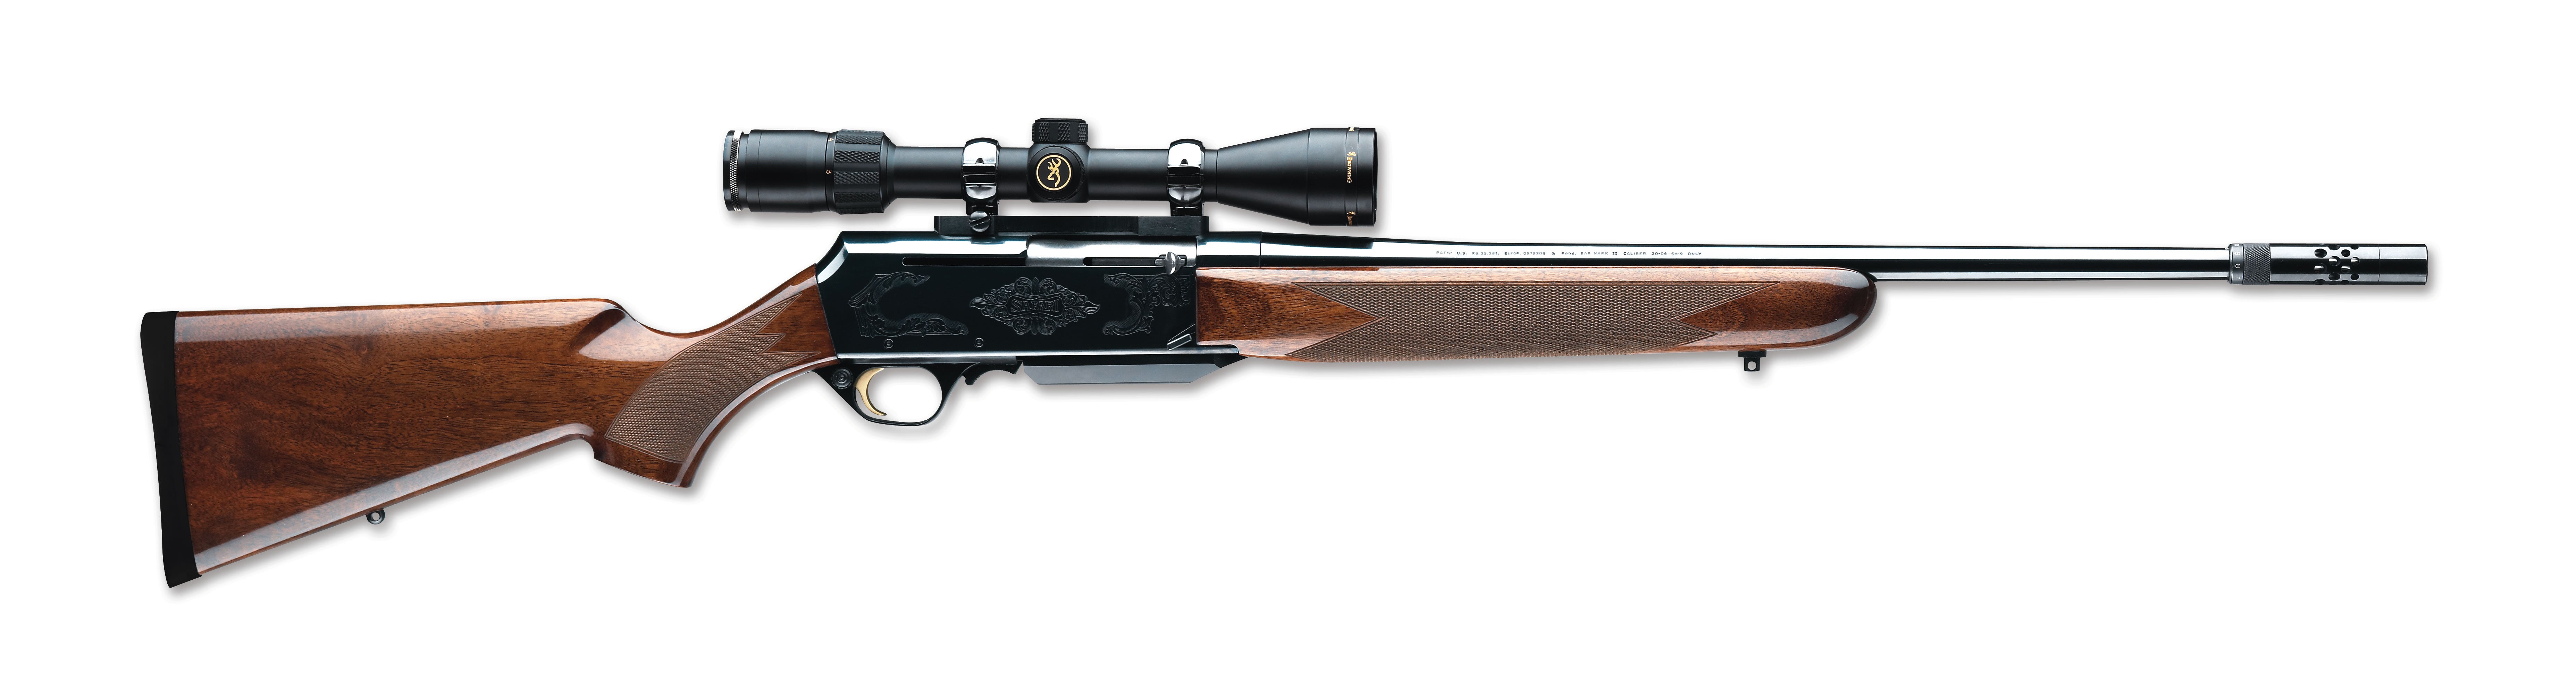 browning safari mark ii 7mm rifle